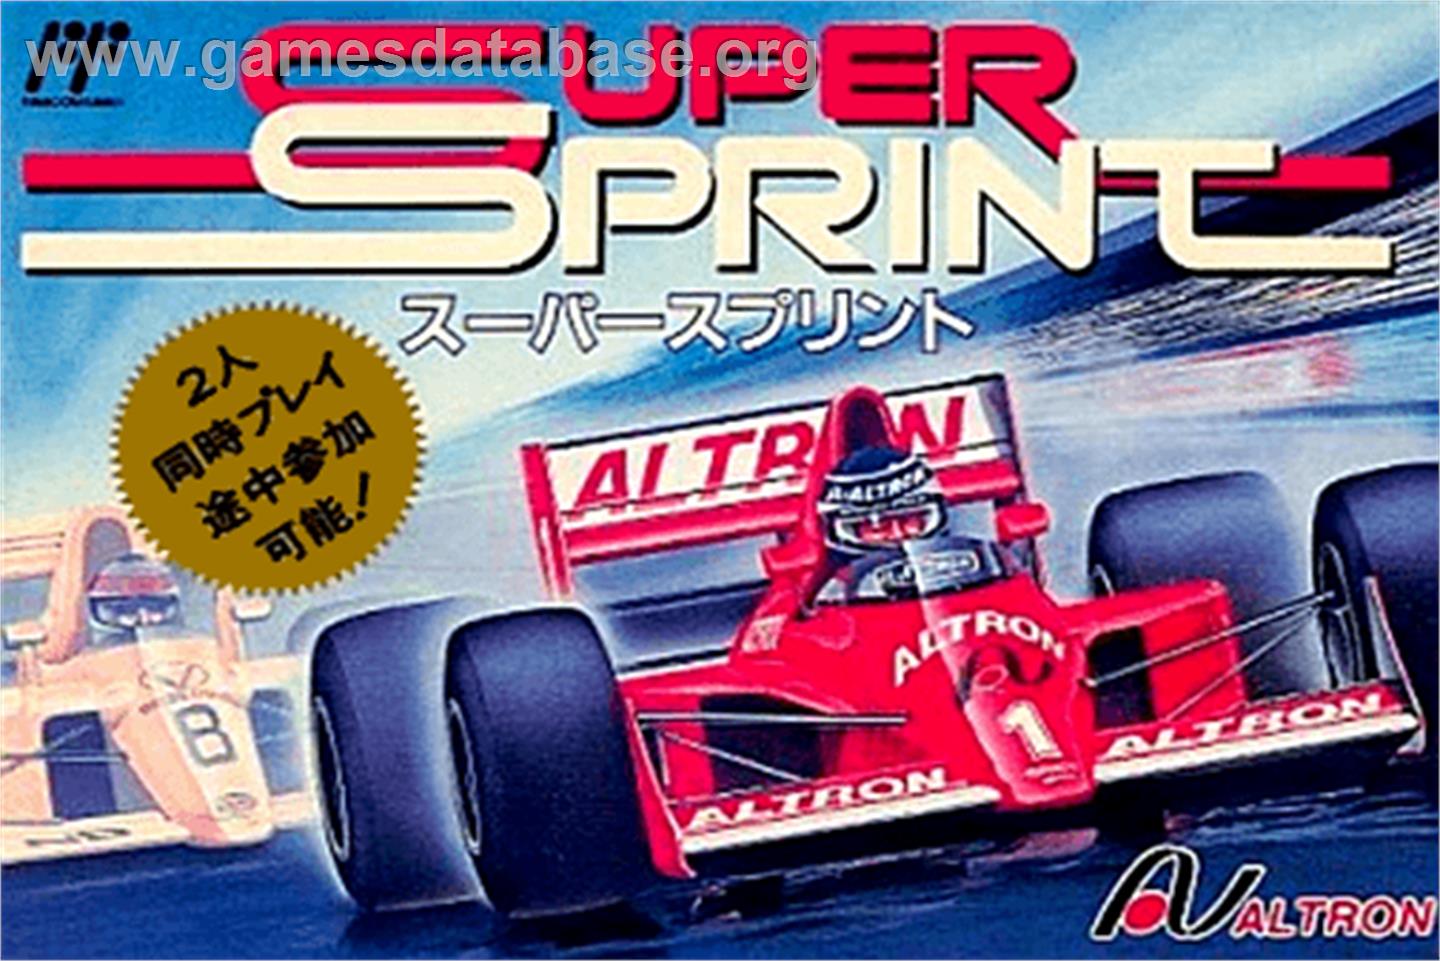 Super Sprint - Nintendo NES - Artwork - Box